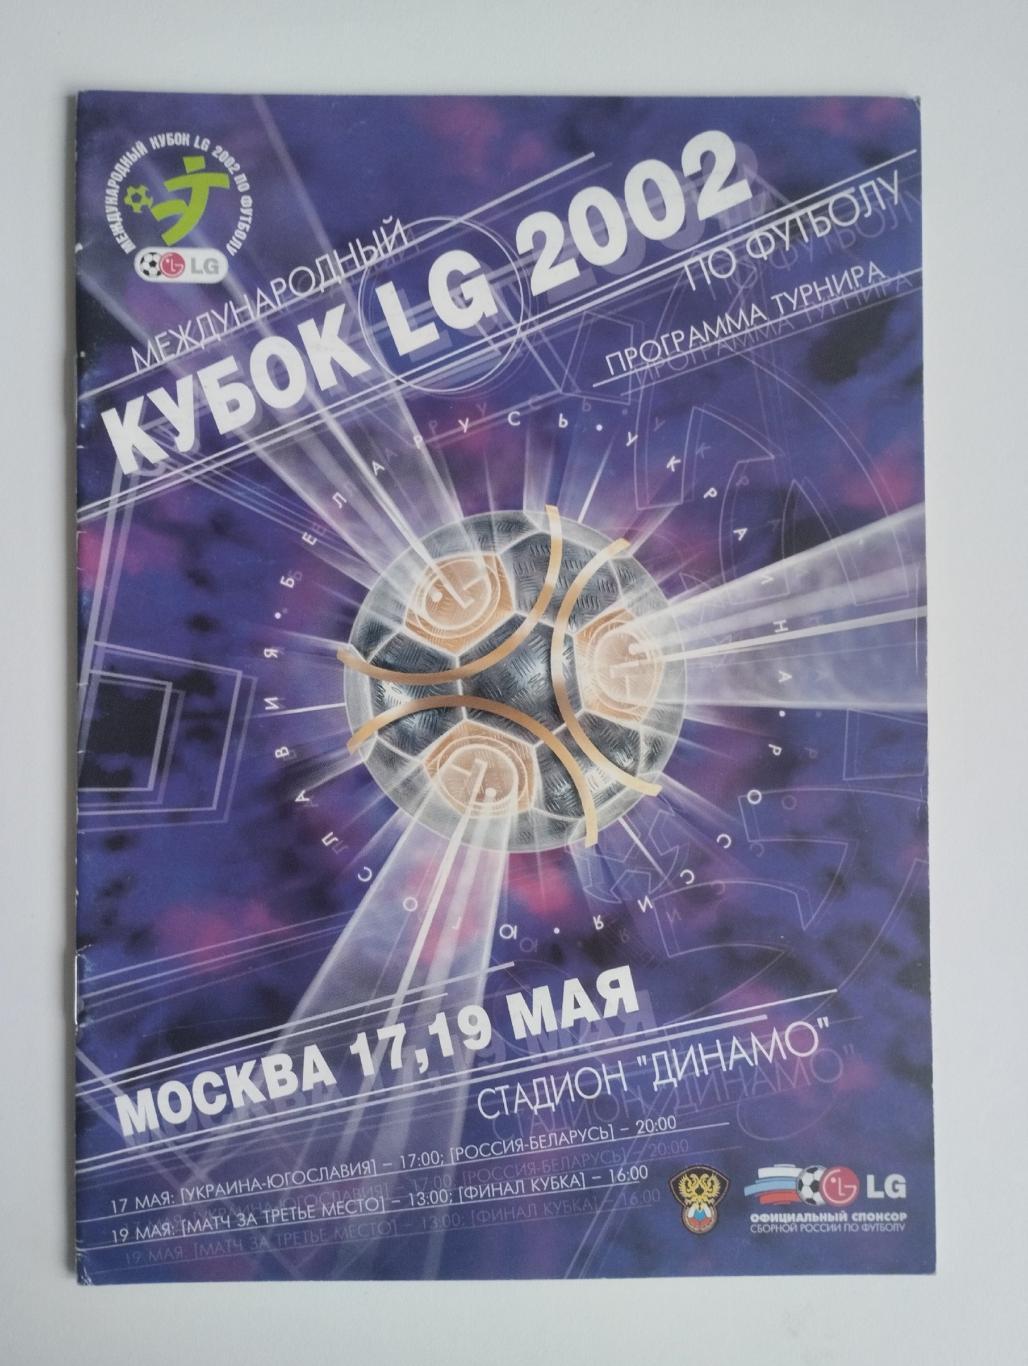 Кубок LG 17 и 19.05.2002 - участники - Россия, Беларусь, Украина, Югославия